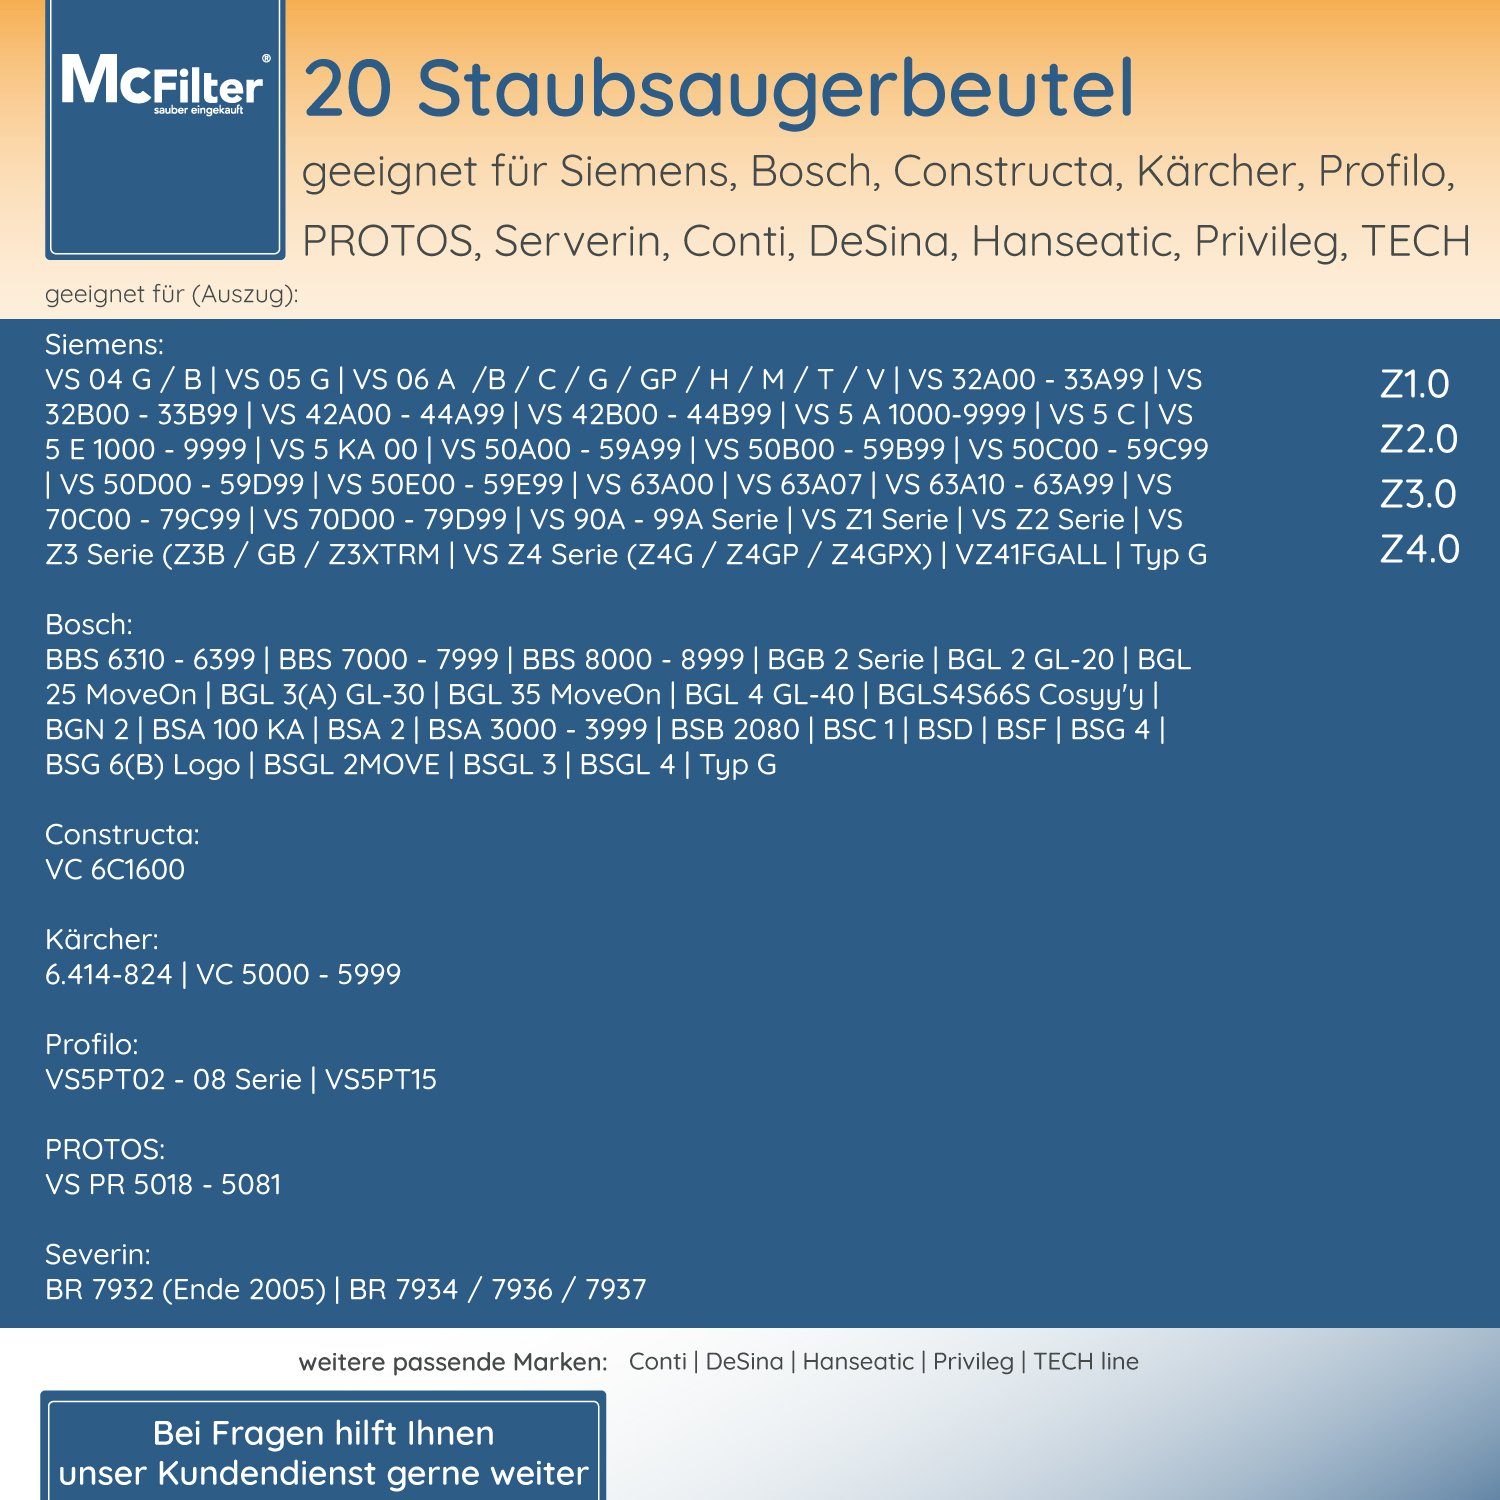 5-lagiger Staubbeutel BBZ41FGALL, für wie für passend inkl. Bosch, St., 20 mit McFilter BGL6TSIL Staubsaugerbeutel Hygieneverschluss, geeignet Staubsauger, Filter